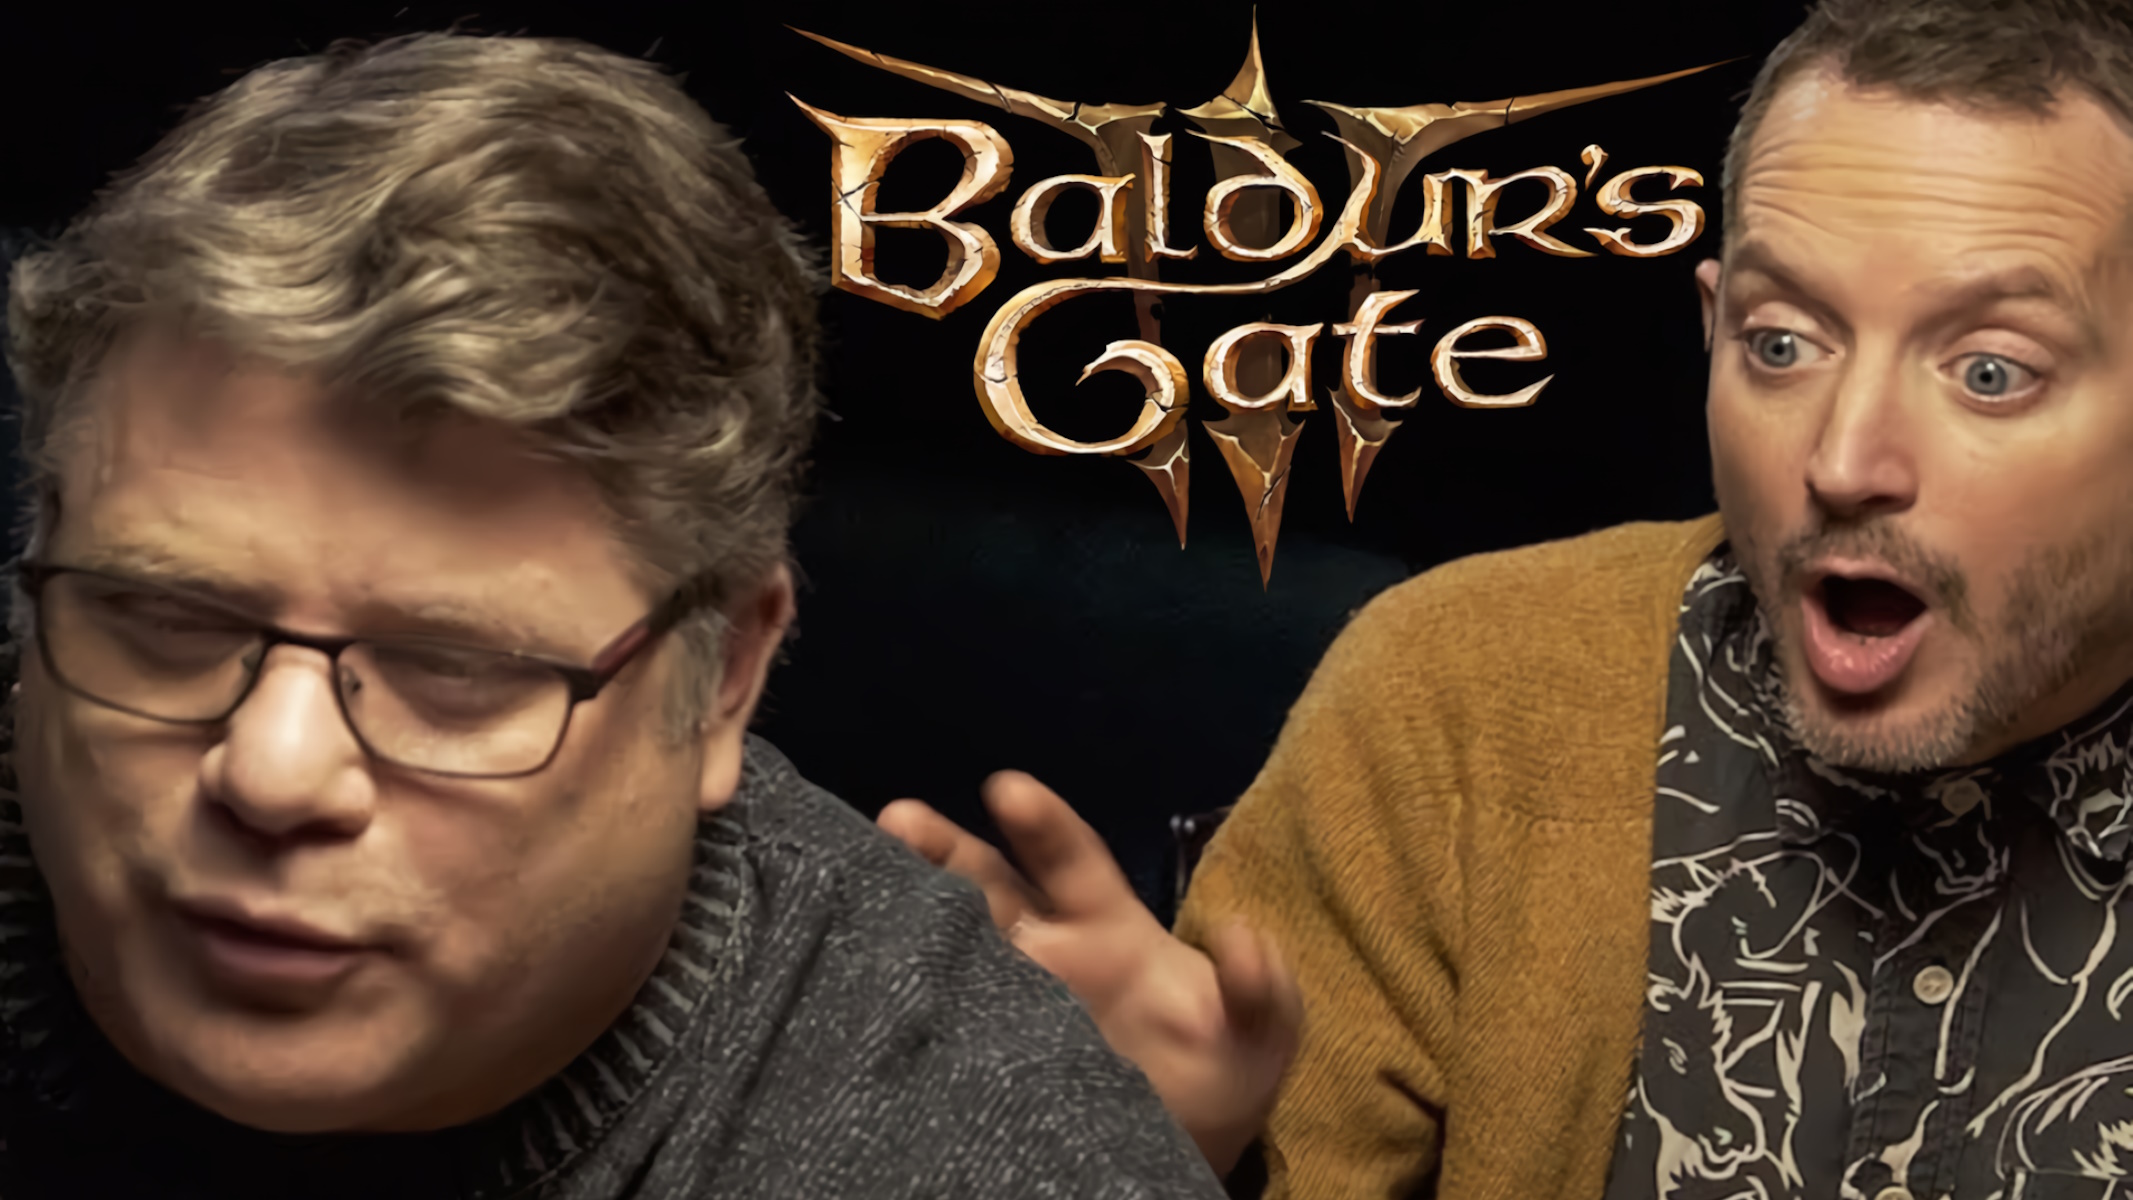 Un'avventura inaspettata su Baldur's Gate 3 con Elijah Wood e Sean Astin